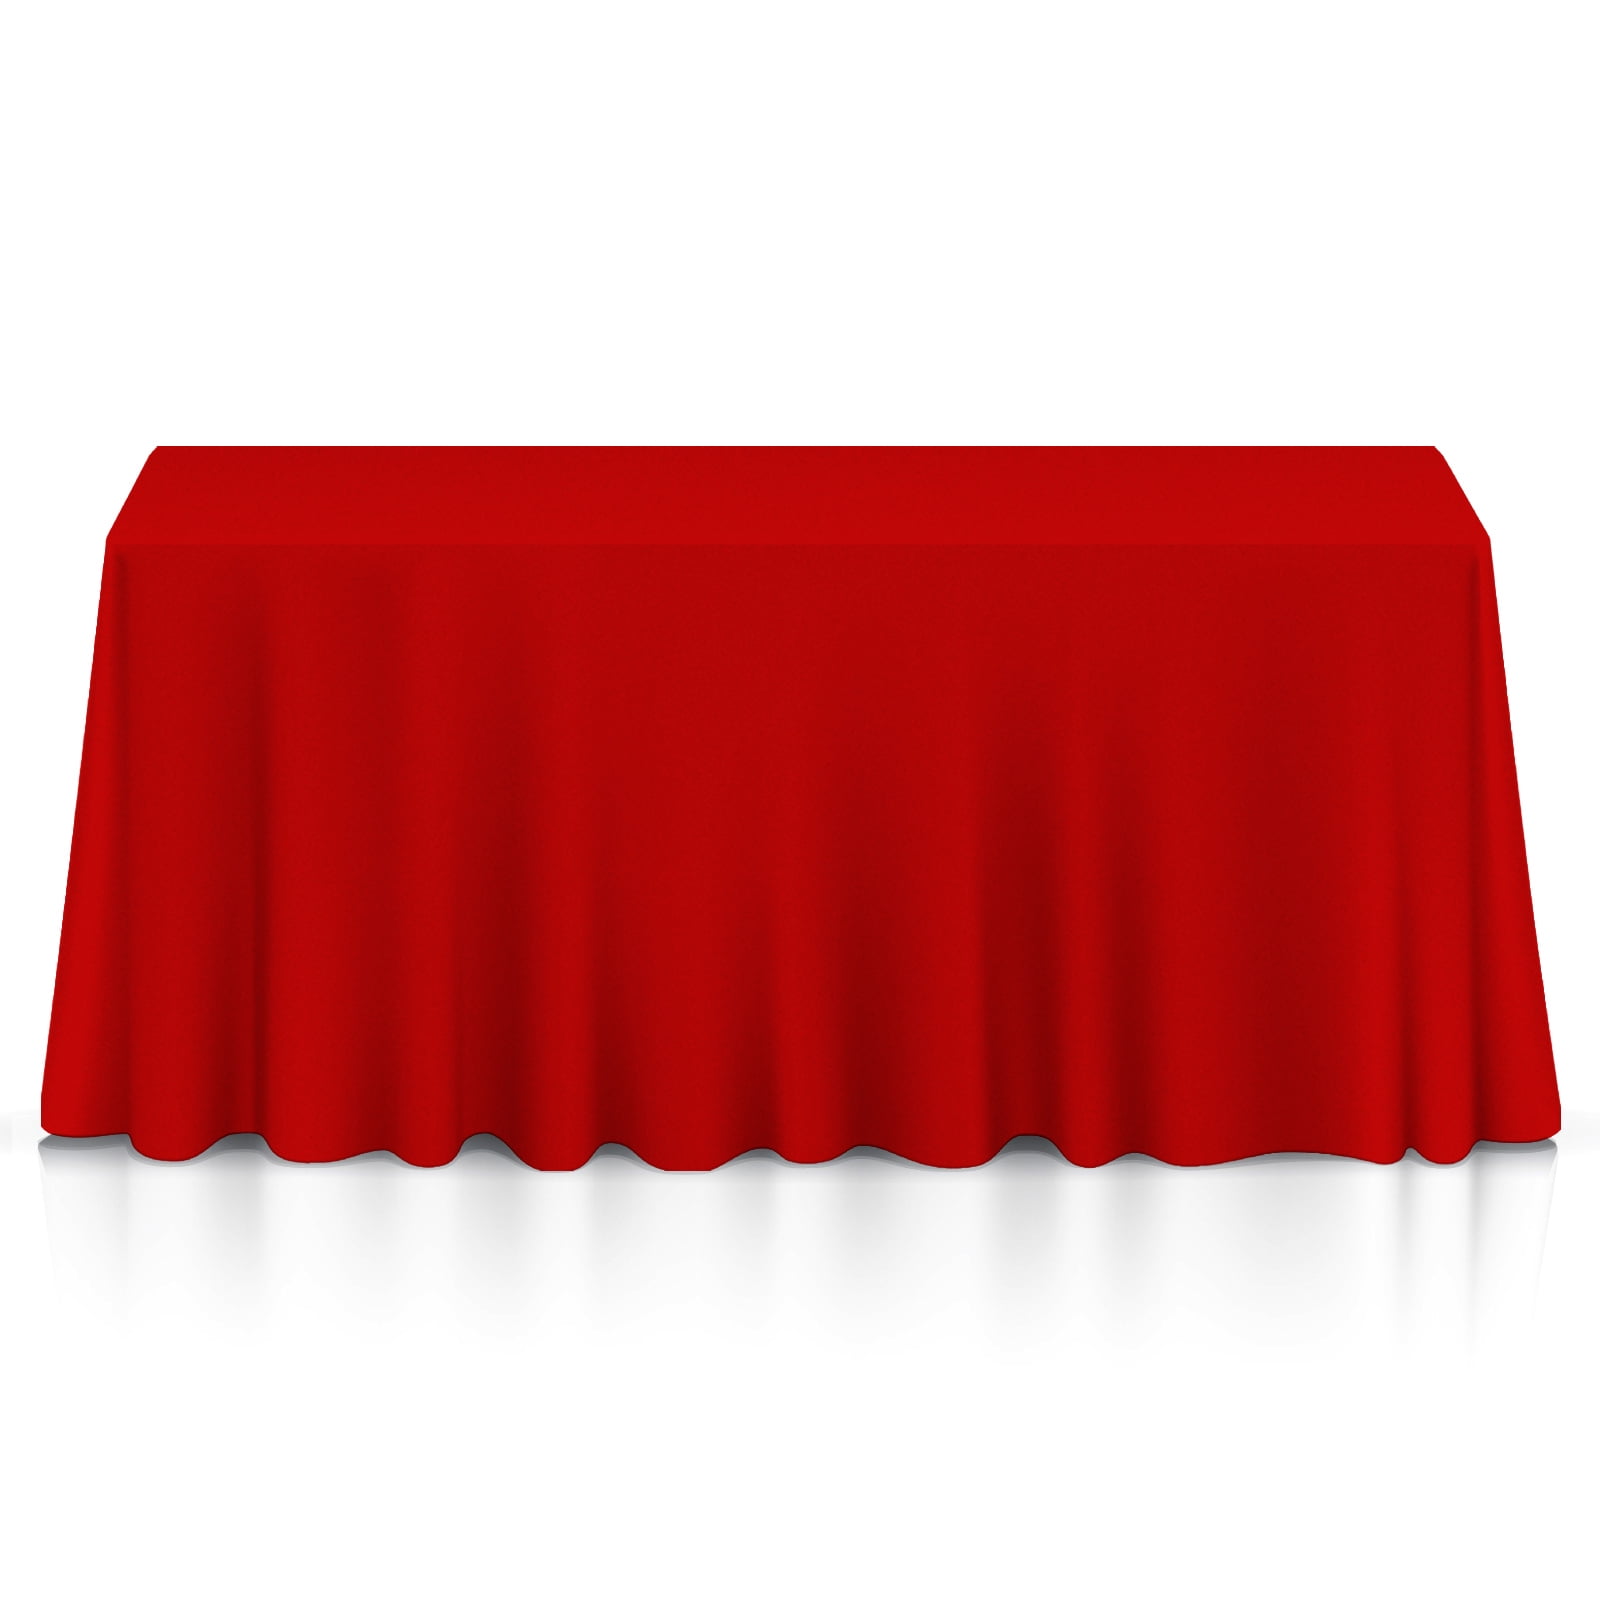 90"x156" Rectangular Tablecloth Fabric Linen Cloth Dinner Wedding Banquet Red 